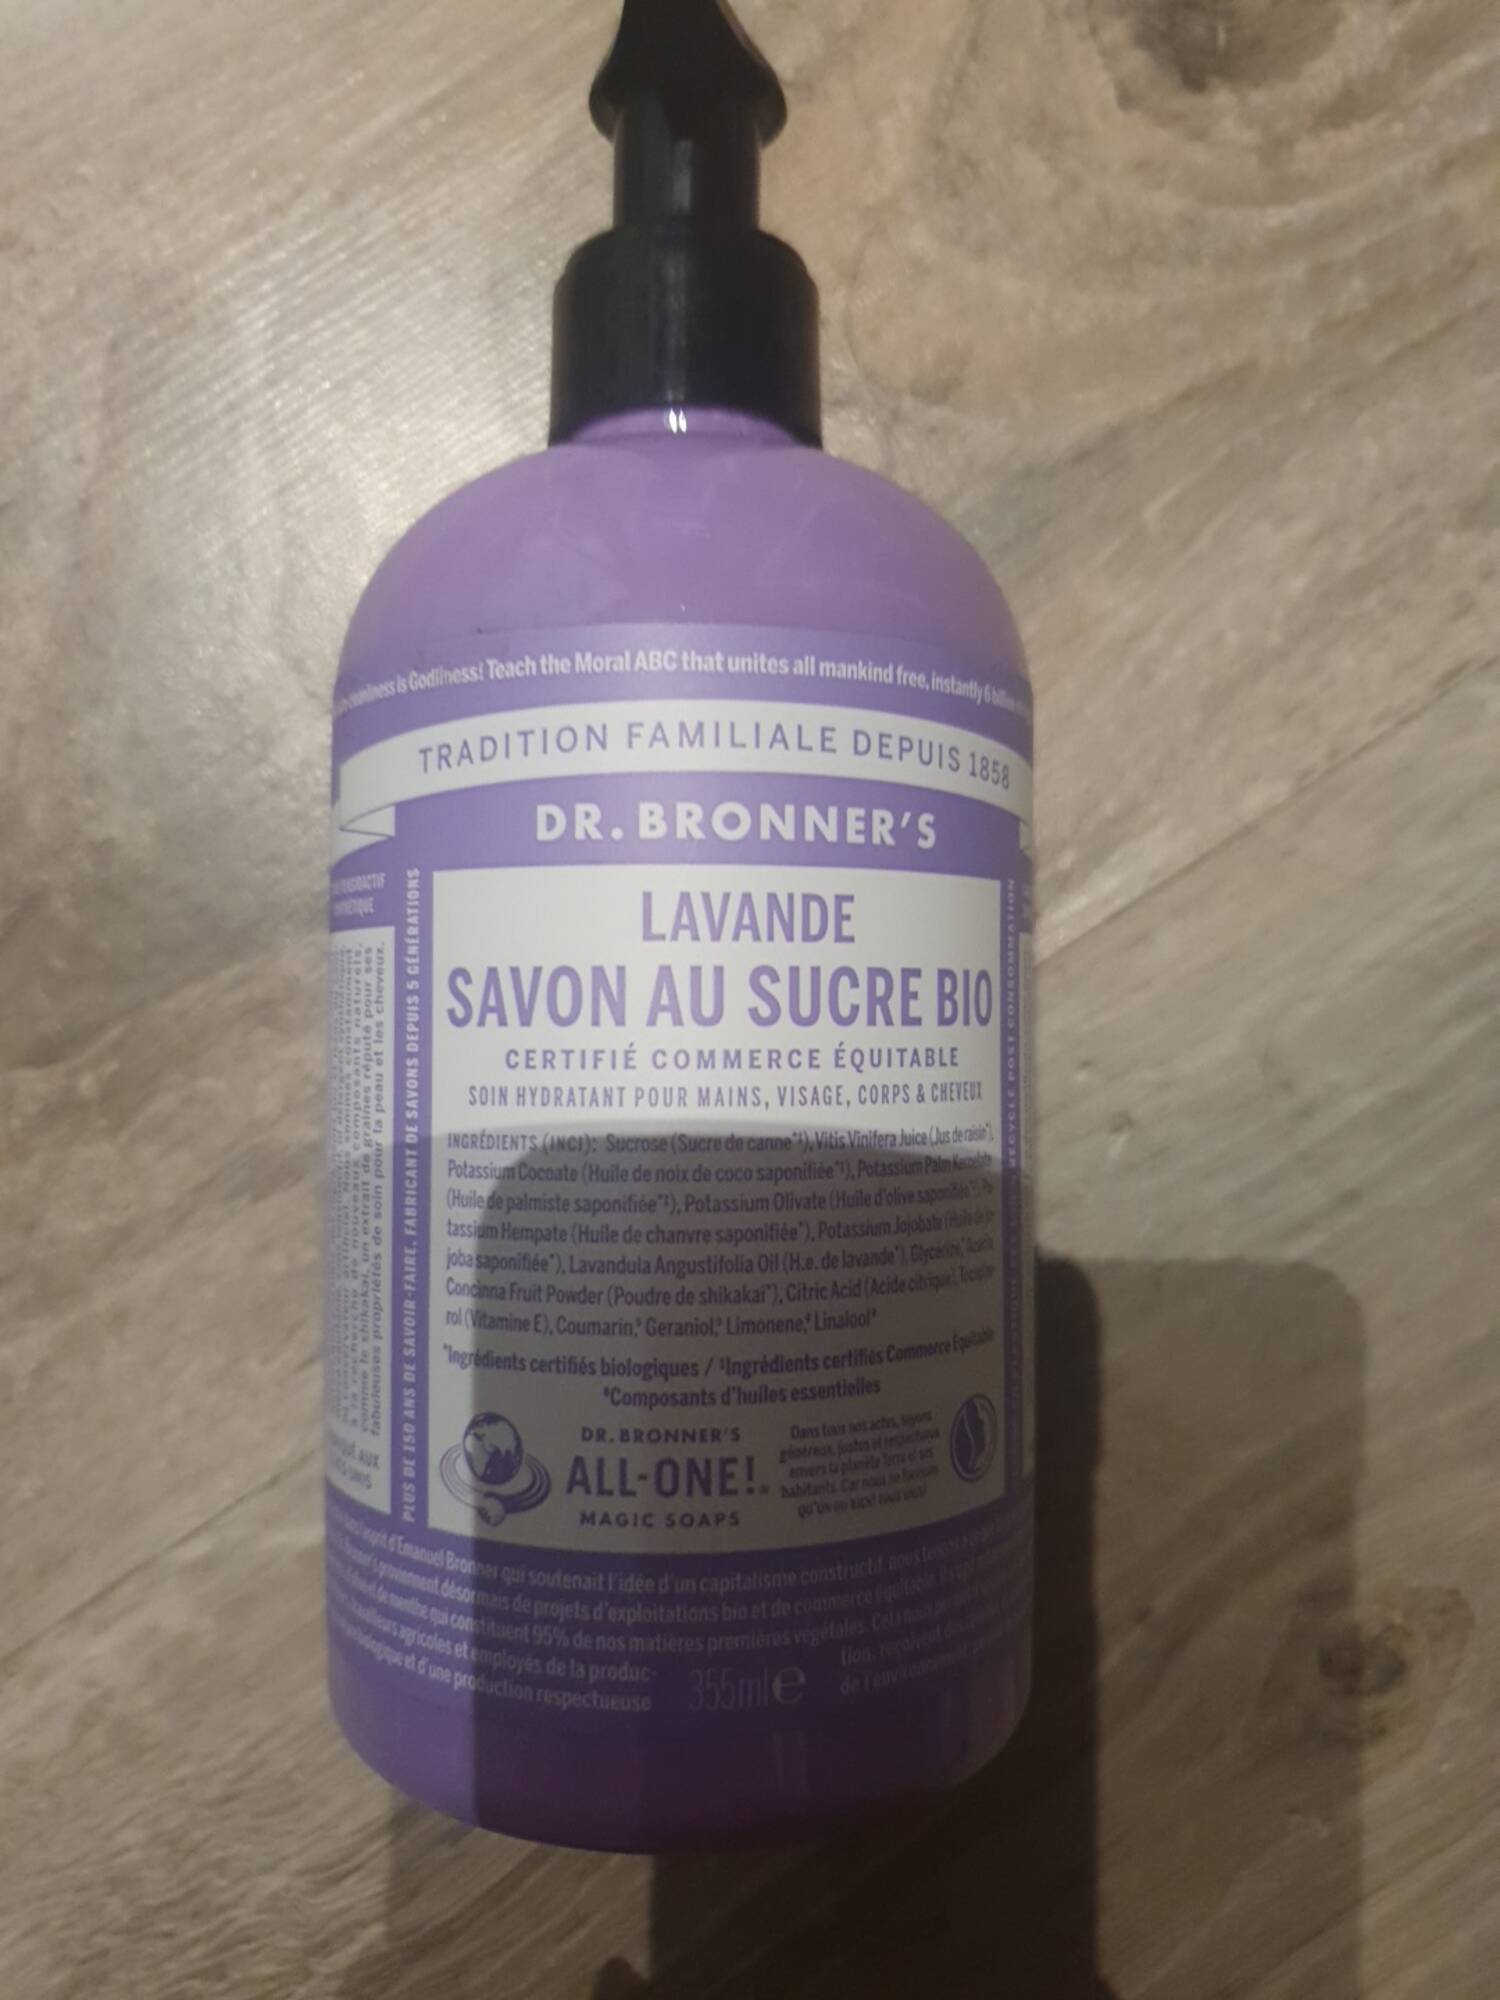 DR. BRONNER'S - Lavande - Savon au sucre bio